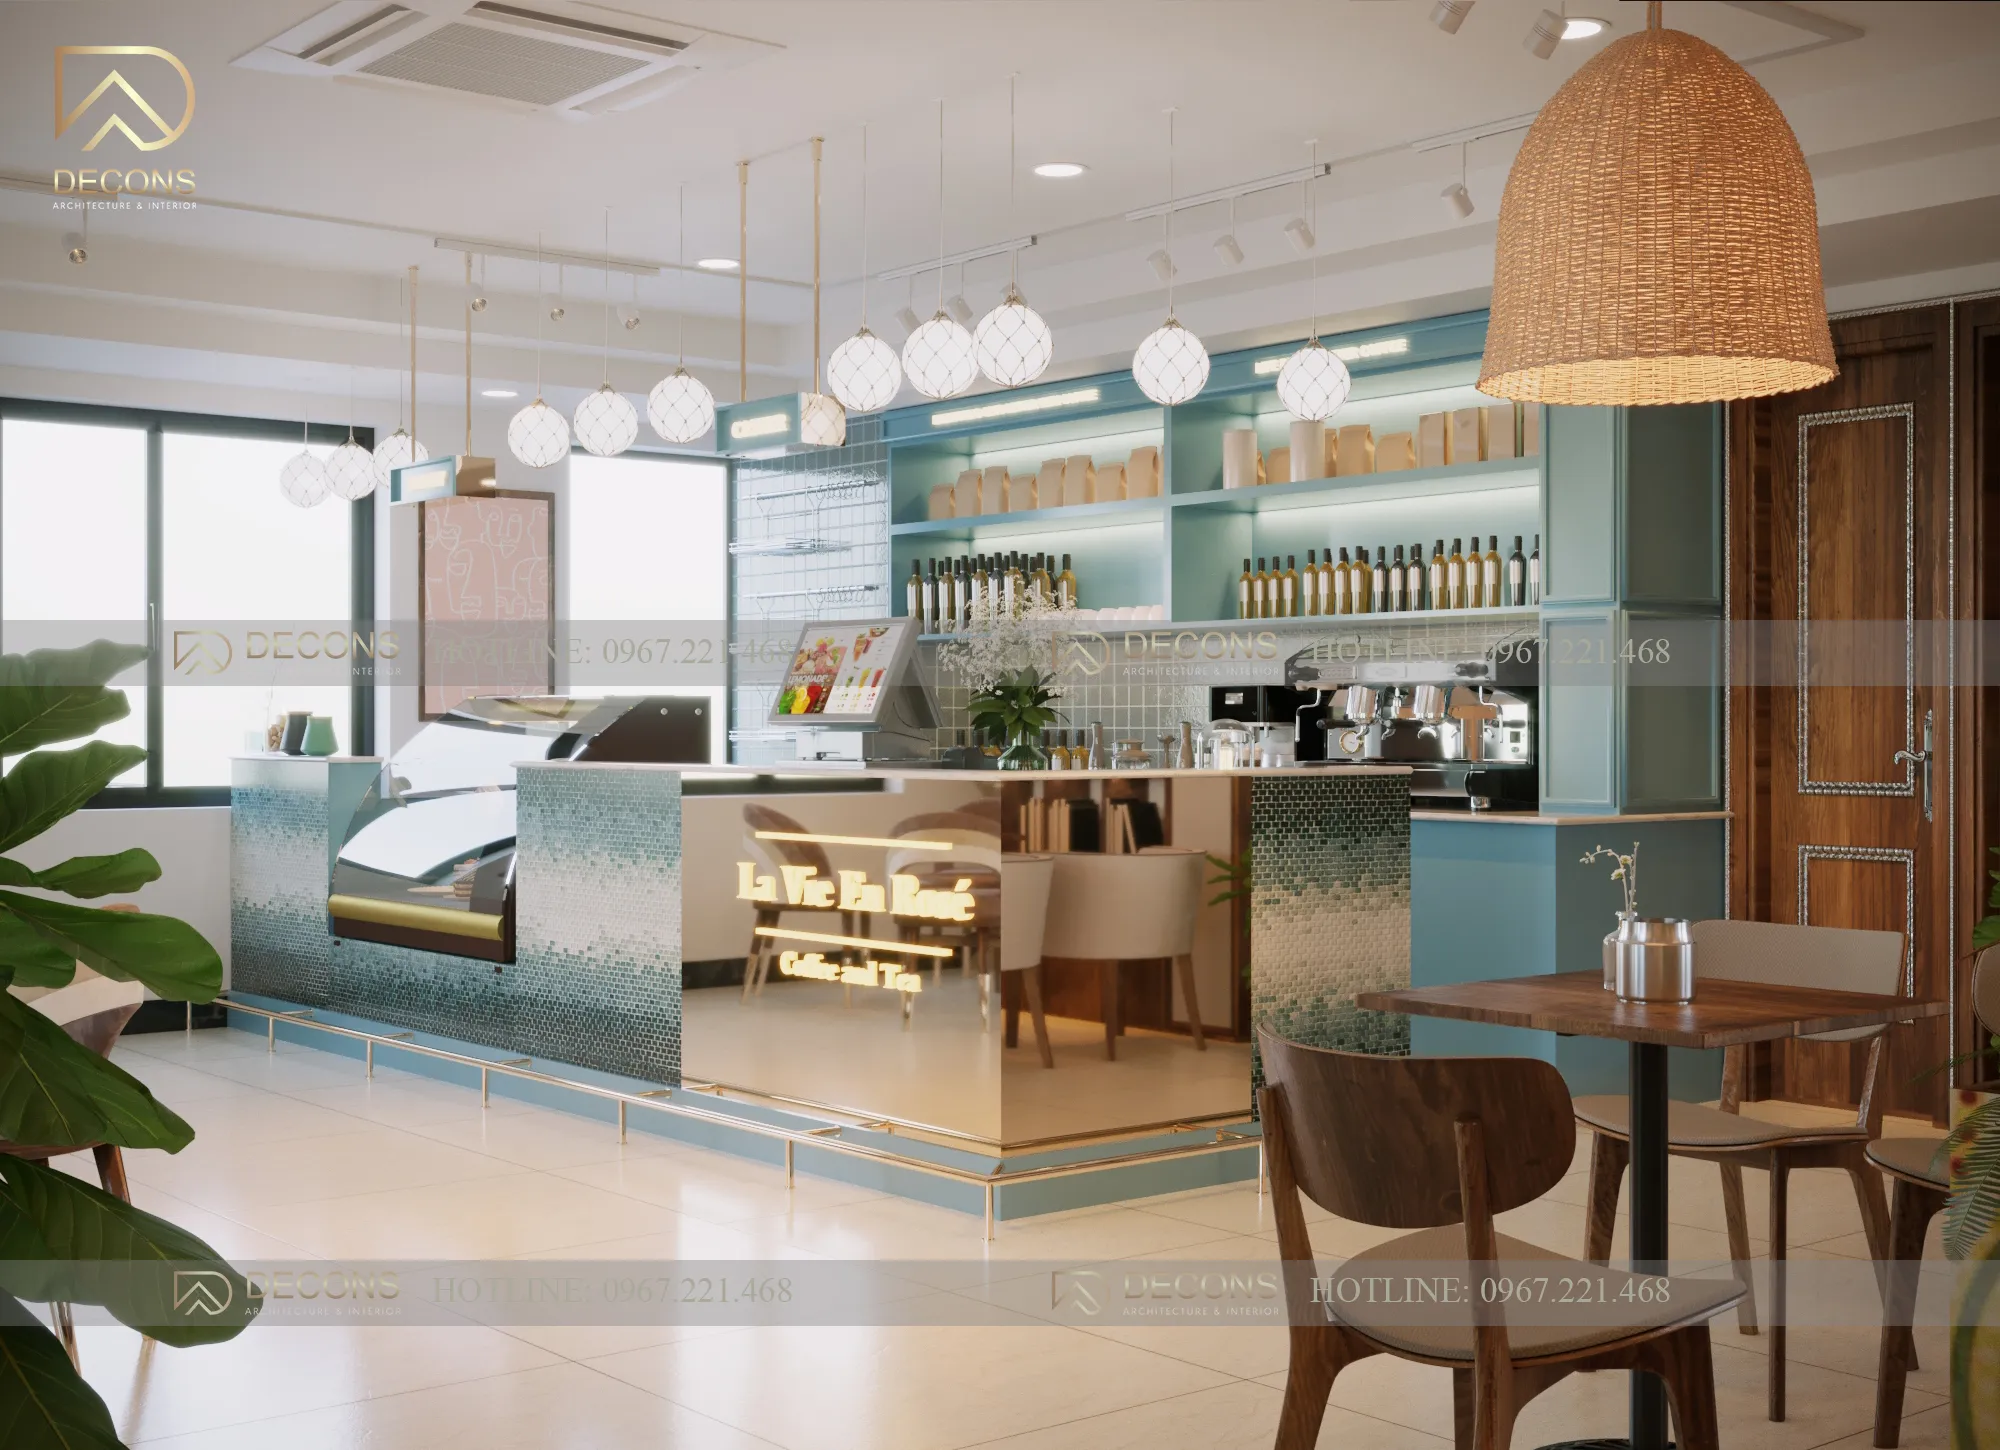 10_11zon Thiết kế nội thất quán cà phê khách sạn Thái Nguyên  thiết kế nhà đẹp Nghệ An